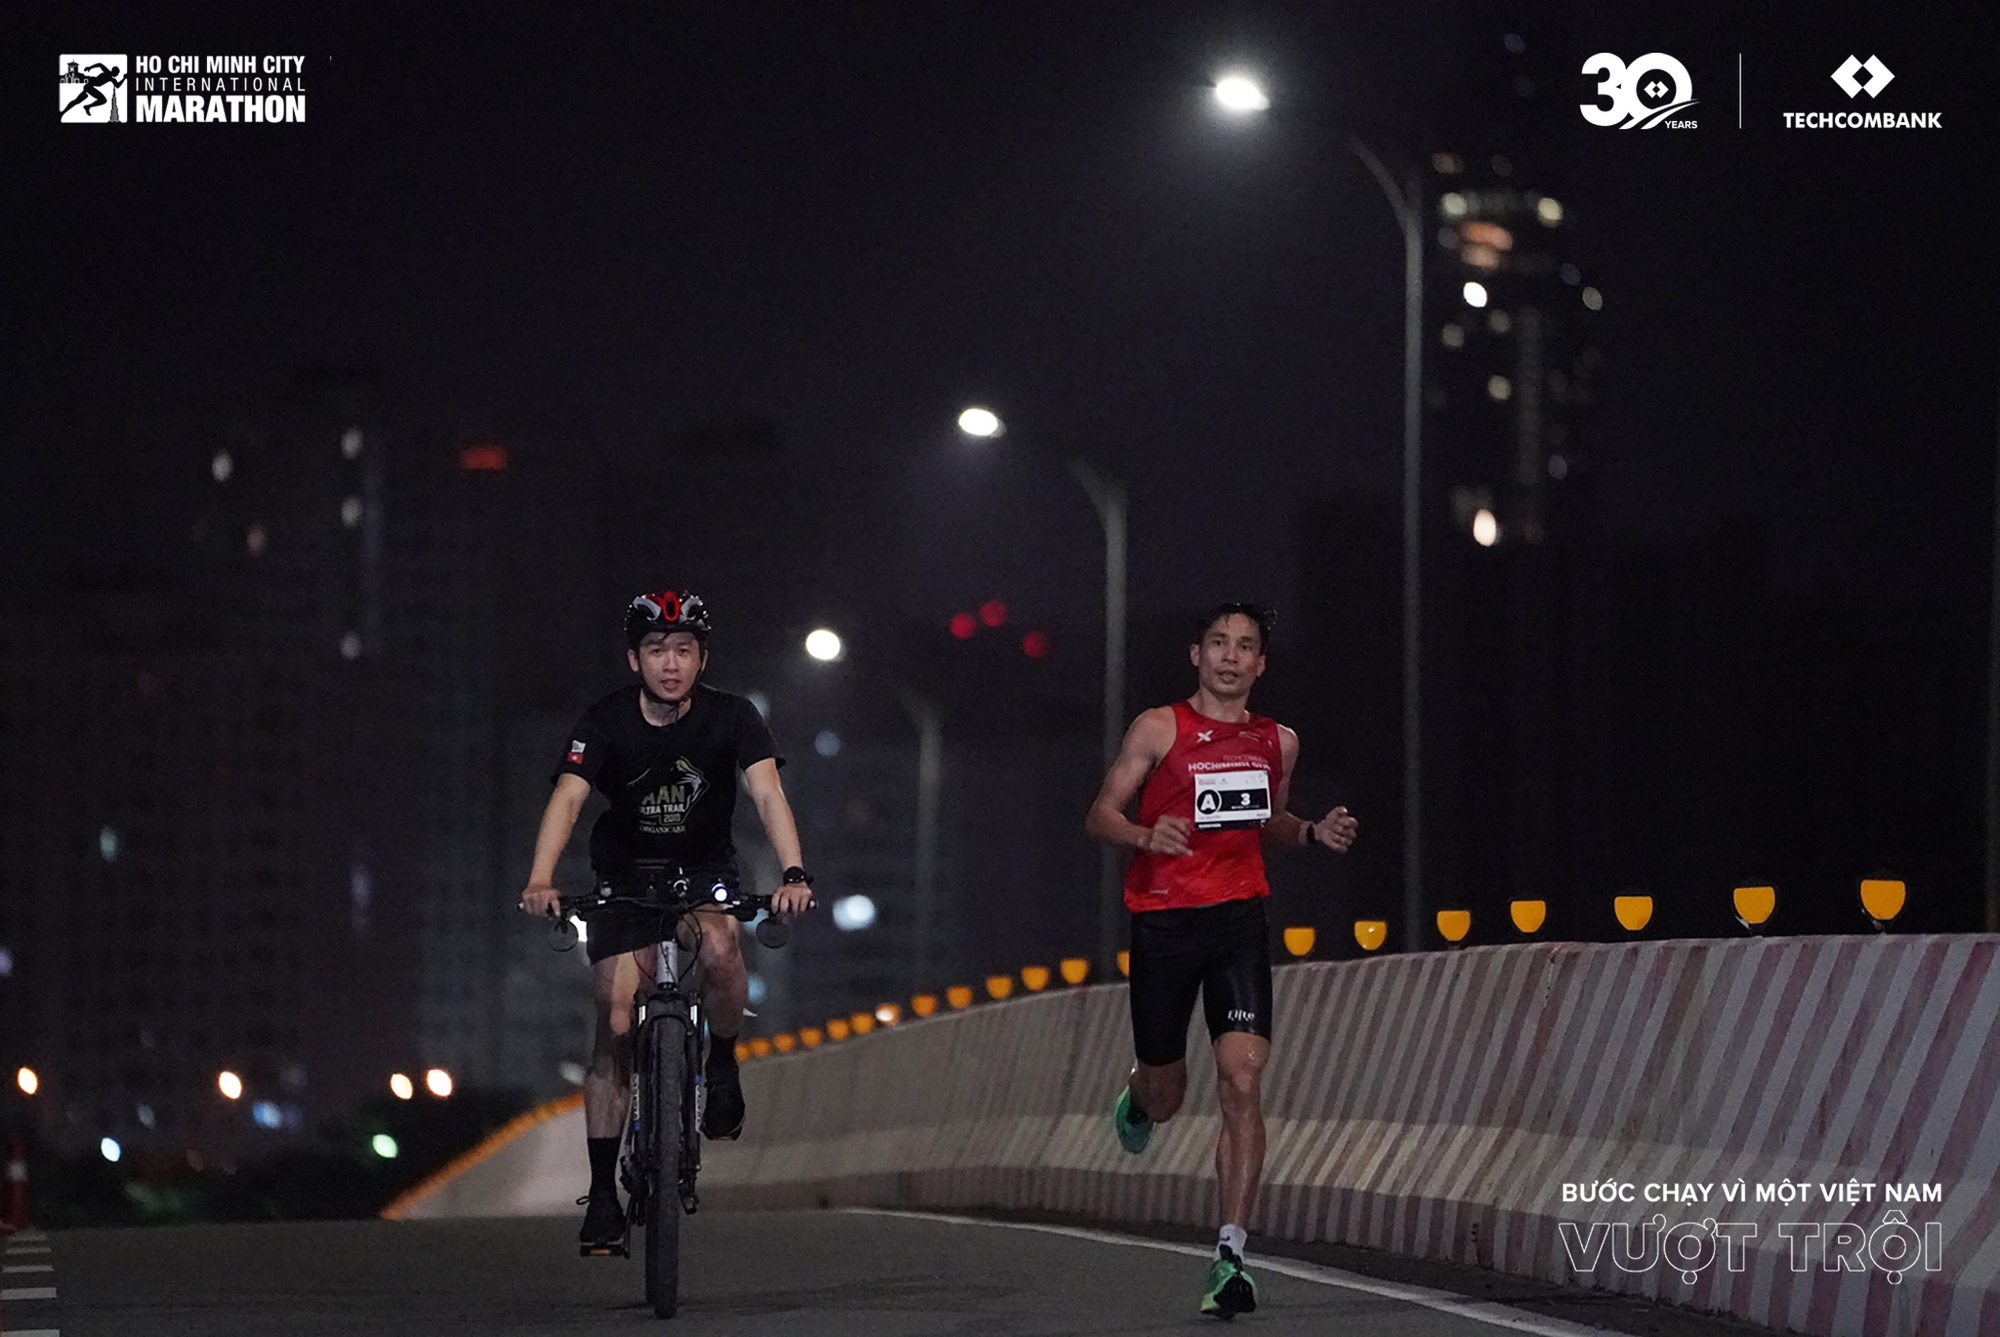 Các nữ Runner Việt Nam vượt trội trong giải Marathon Quốc tế thành phố Hồ Chí Minh Techcombank mùa thứ 6- Ảnh 5.